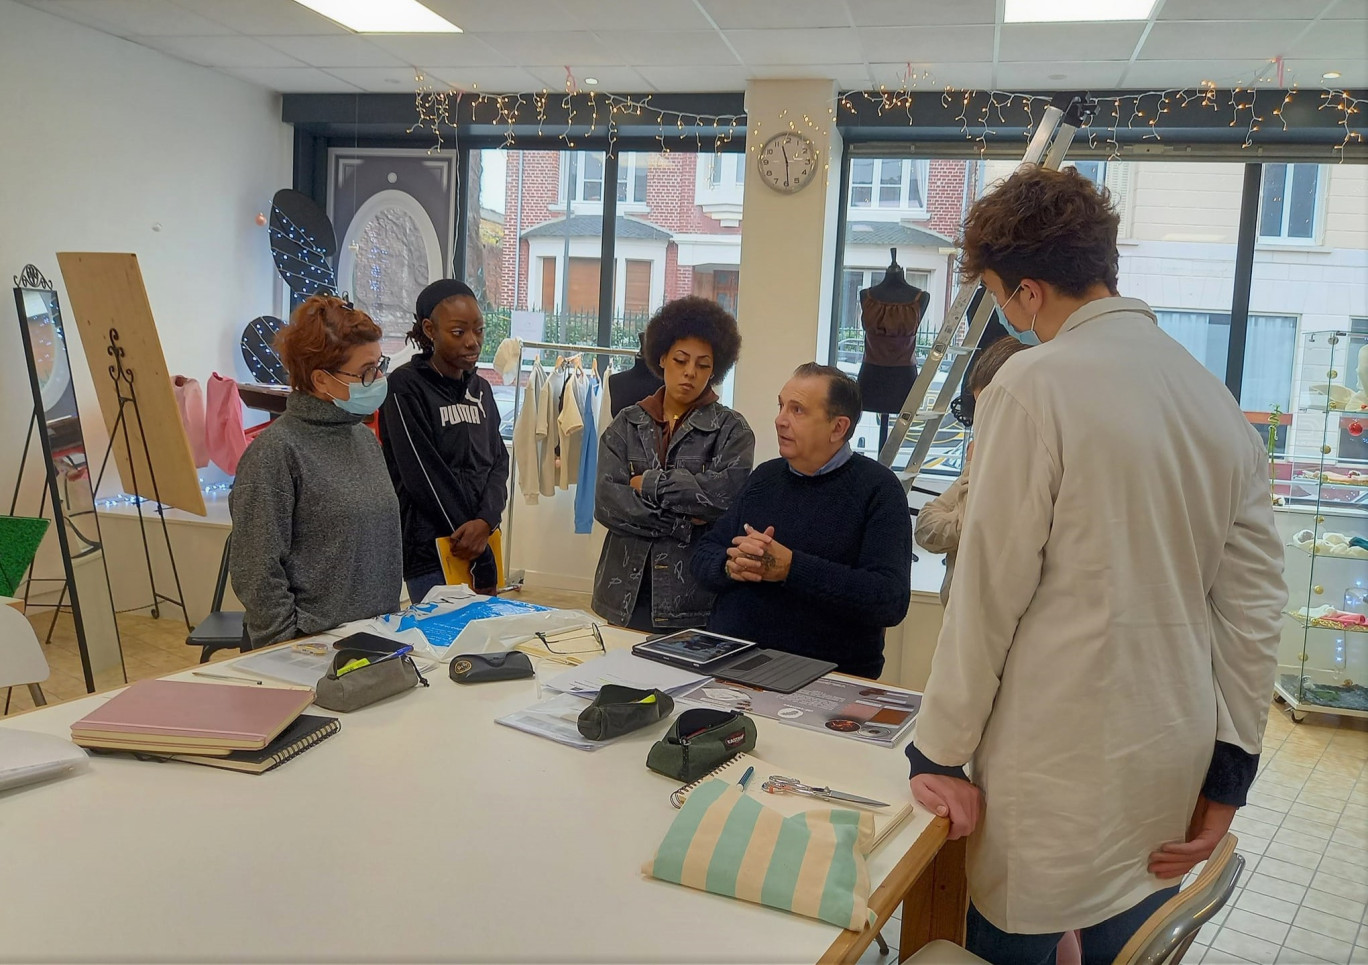 À Ham, l’Atelier coopératif de couture de Jean-Luc François a accompagné neuf projets. ©Atelier coopératif JLF